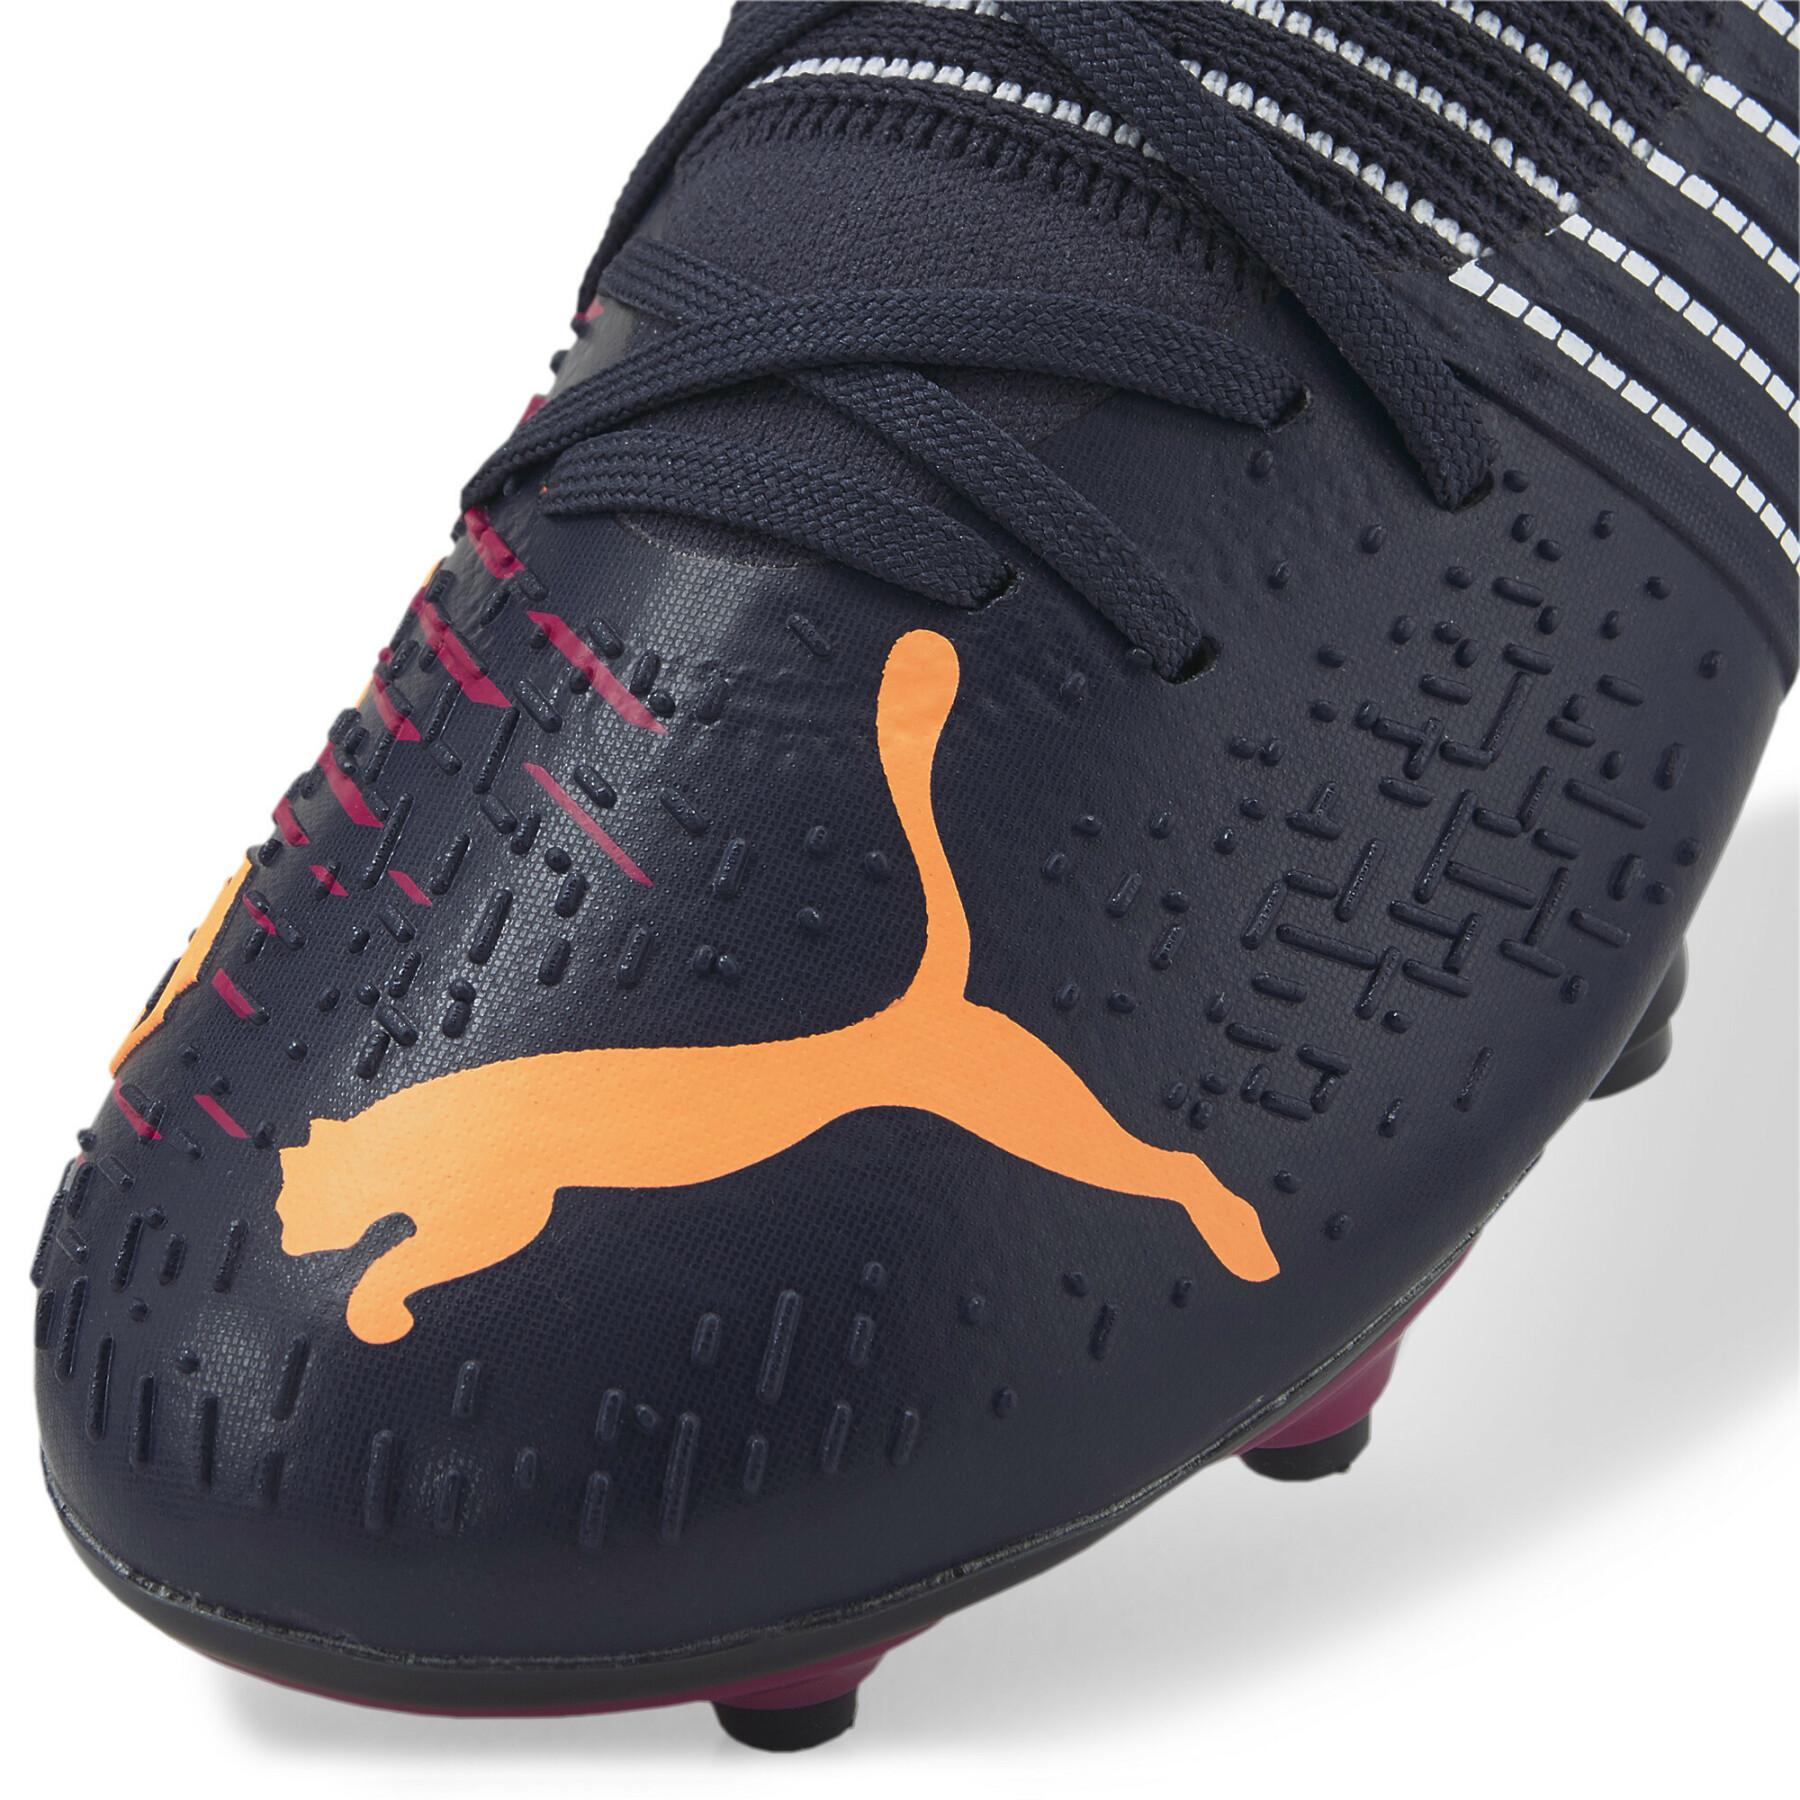 Dziecięce buty piłkarskie Puma FUTURE Z 3.2 FG/AG